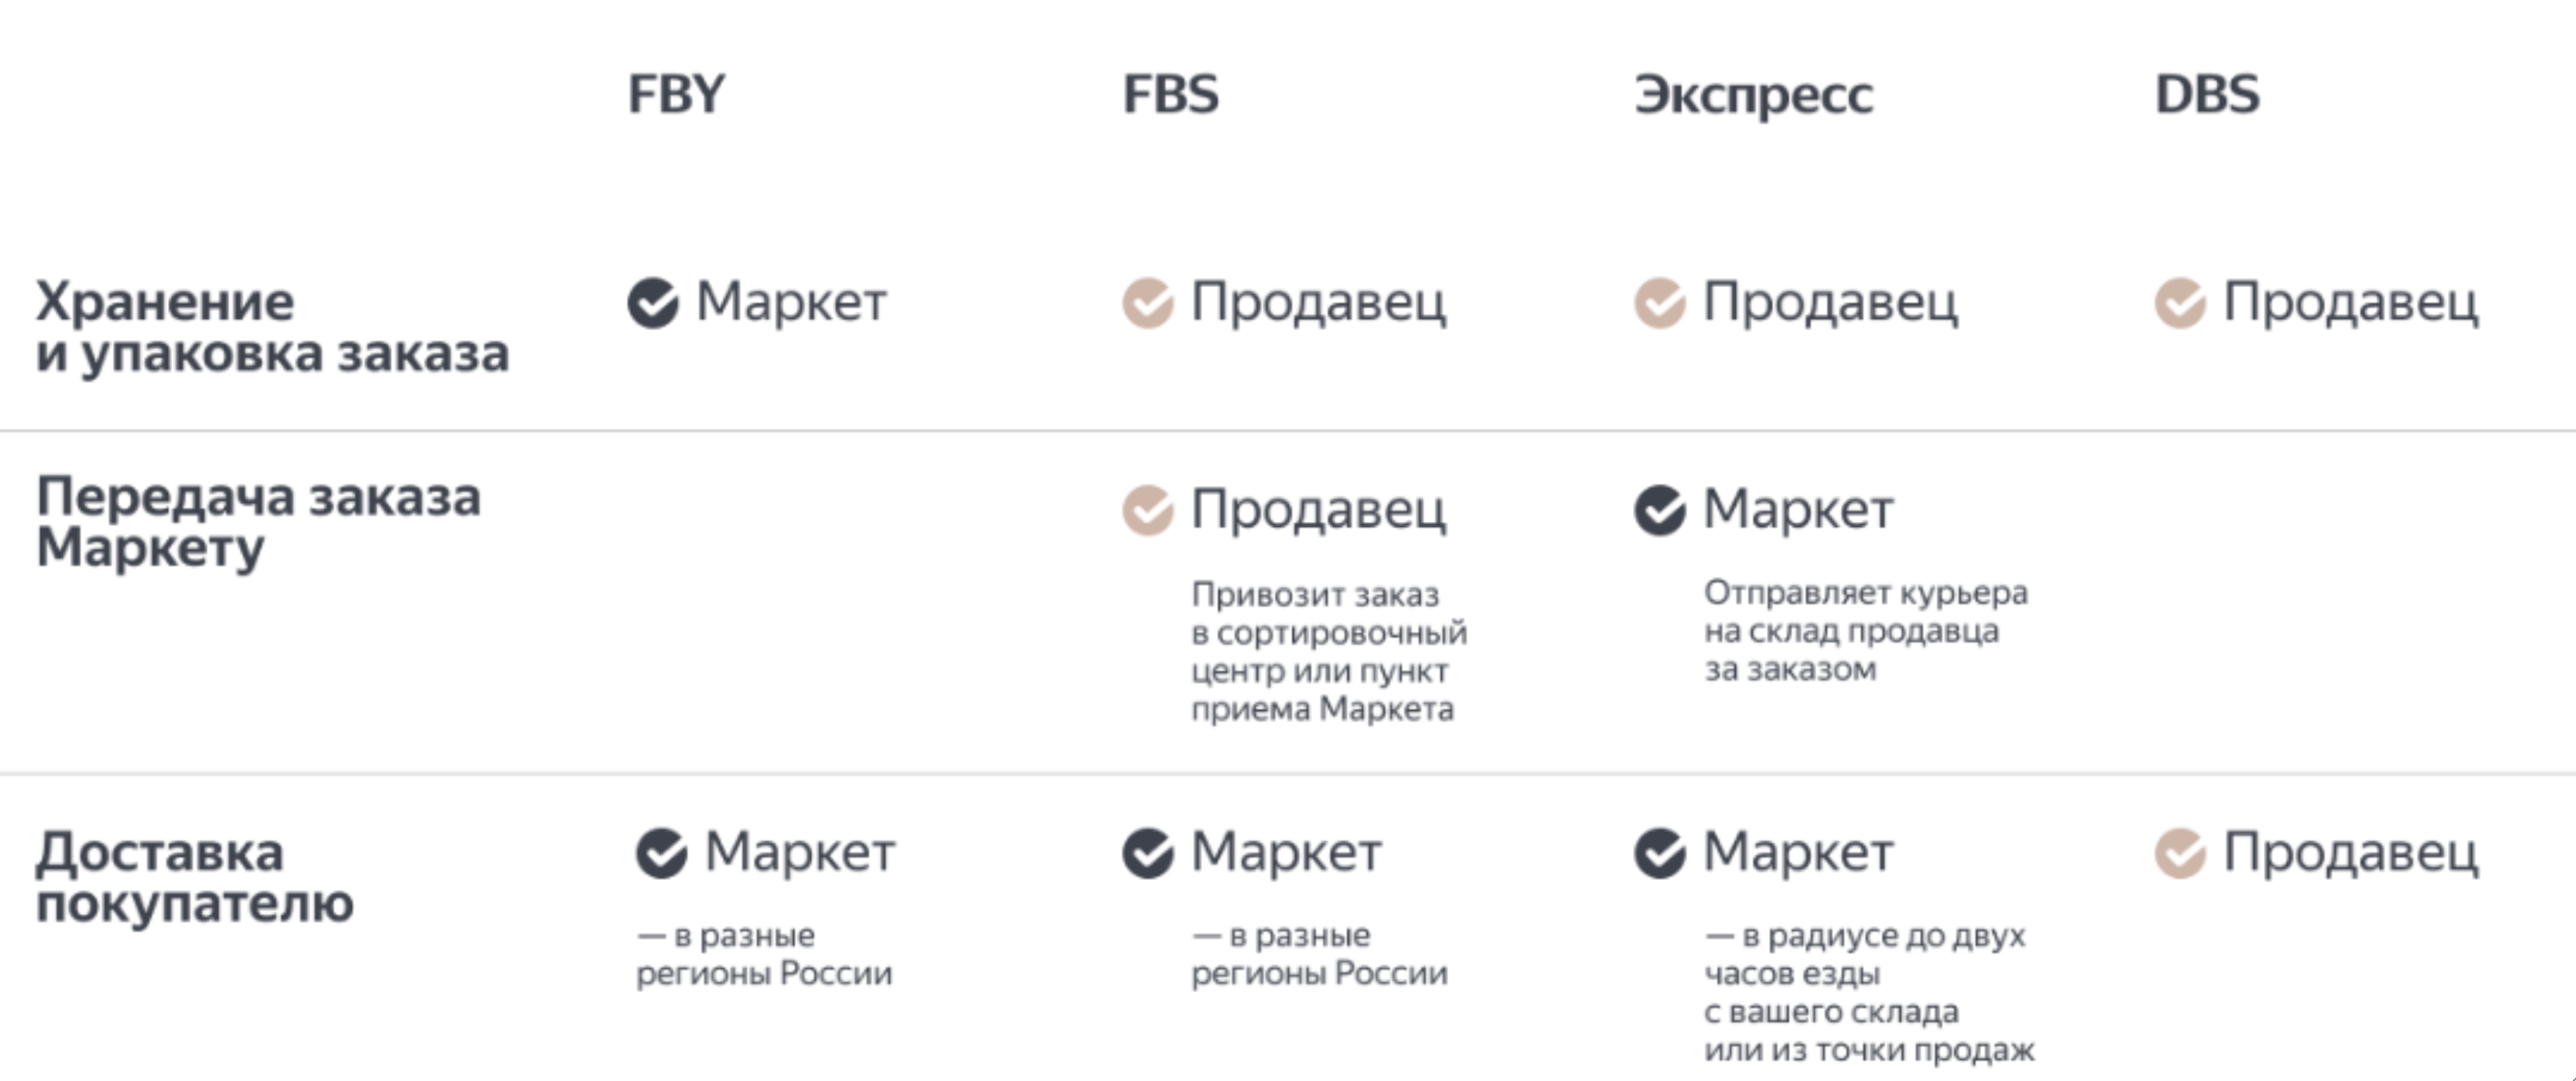 Как продавать на Яндекс.Маркете: инструкция | Деловая среда